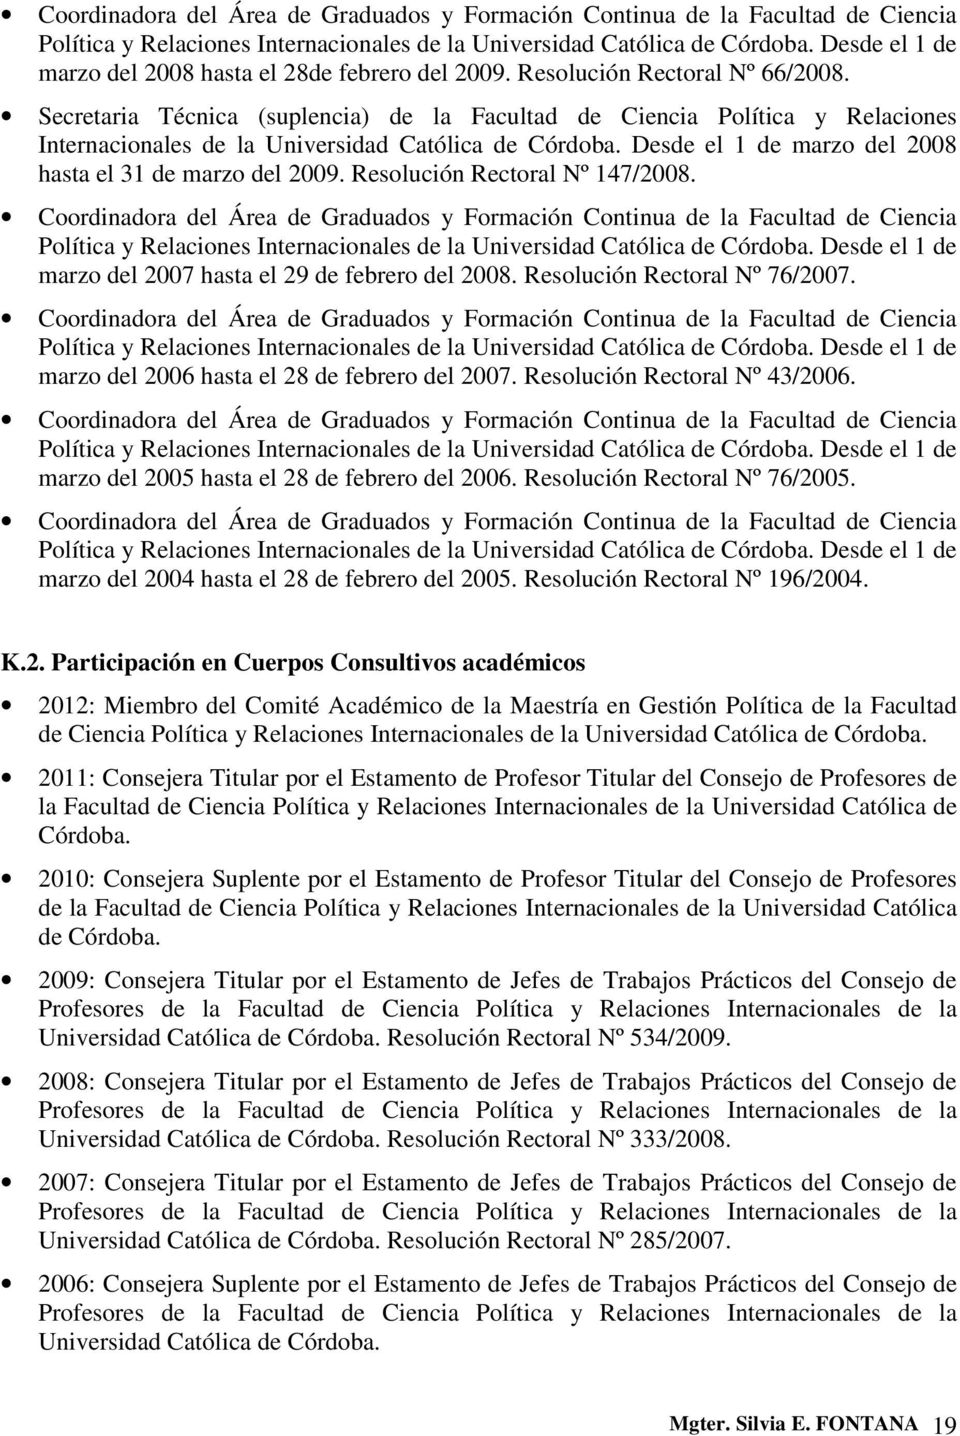 Secretaria Técnica (suplencia) de la Facultad de Ciencia Política y Relaciones Internacionales de la Universidad Católica de Córdoba. Desde el 1 de marzo del 2008 hasta el 31 de marzo del 2009.